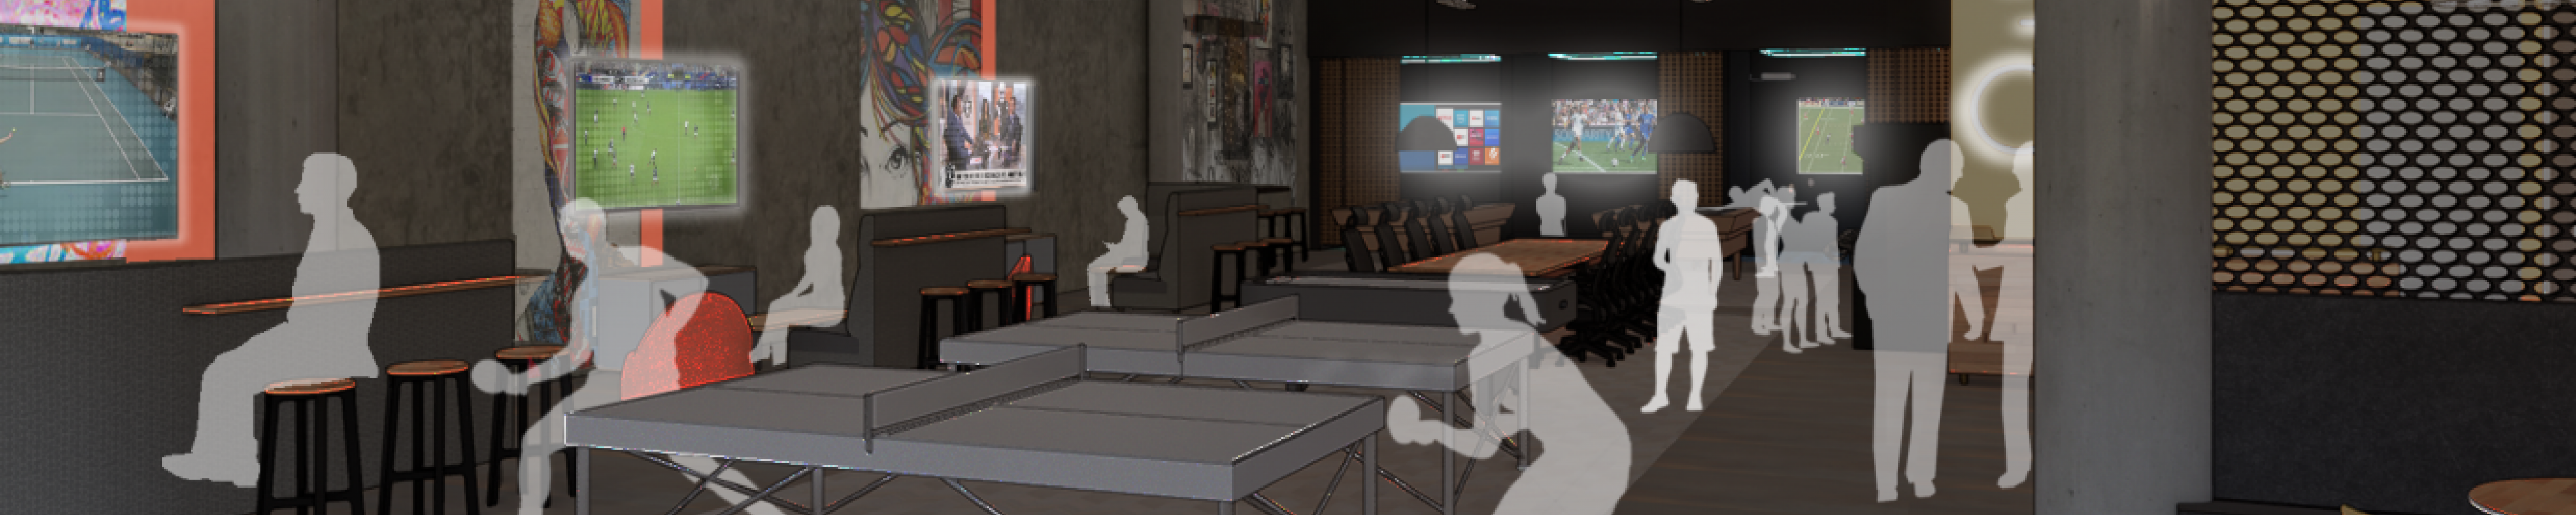 Game room rendering